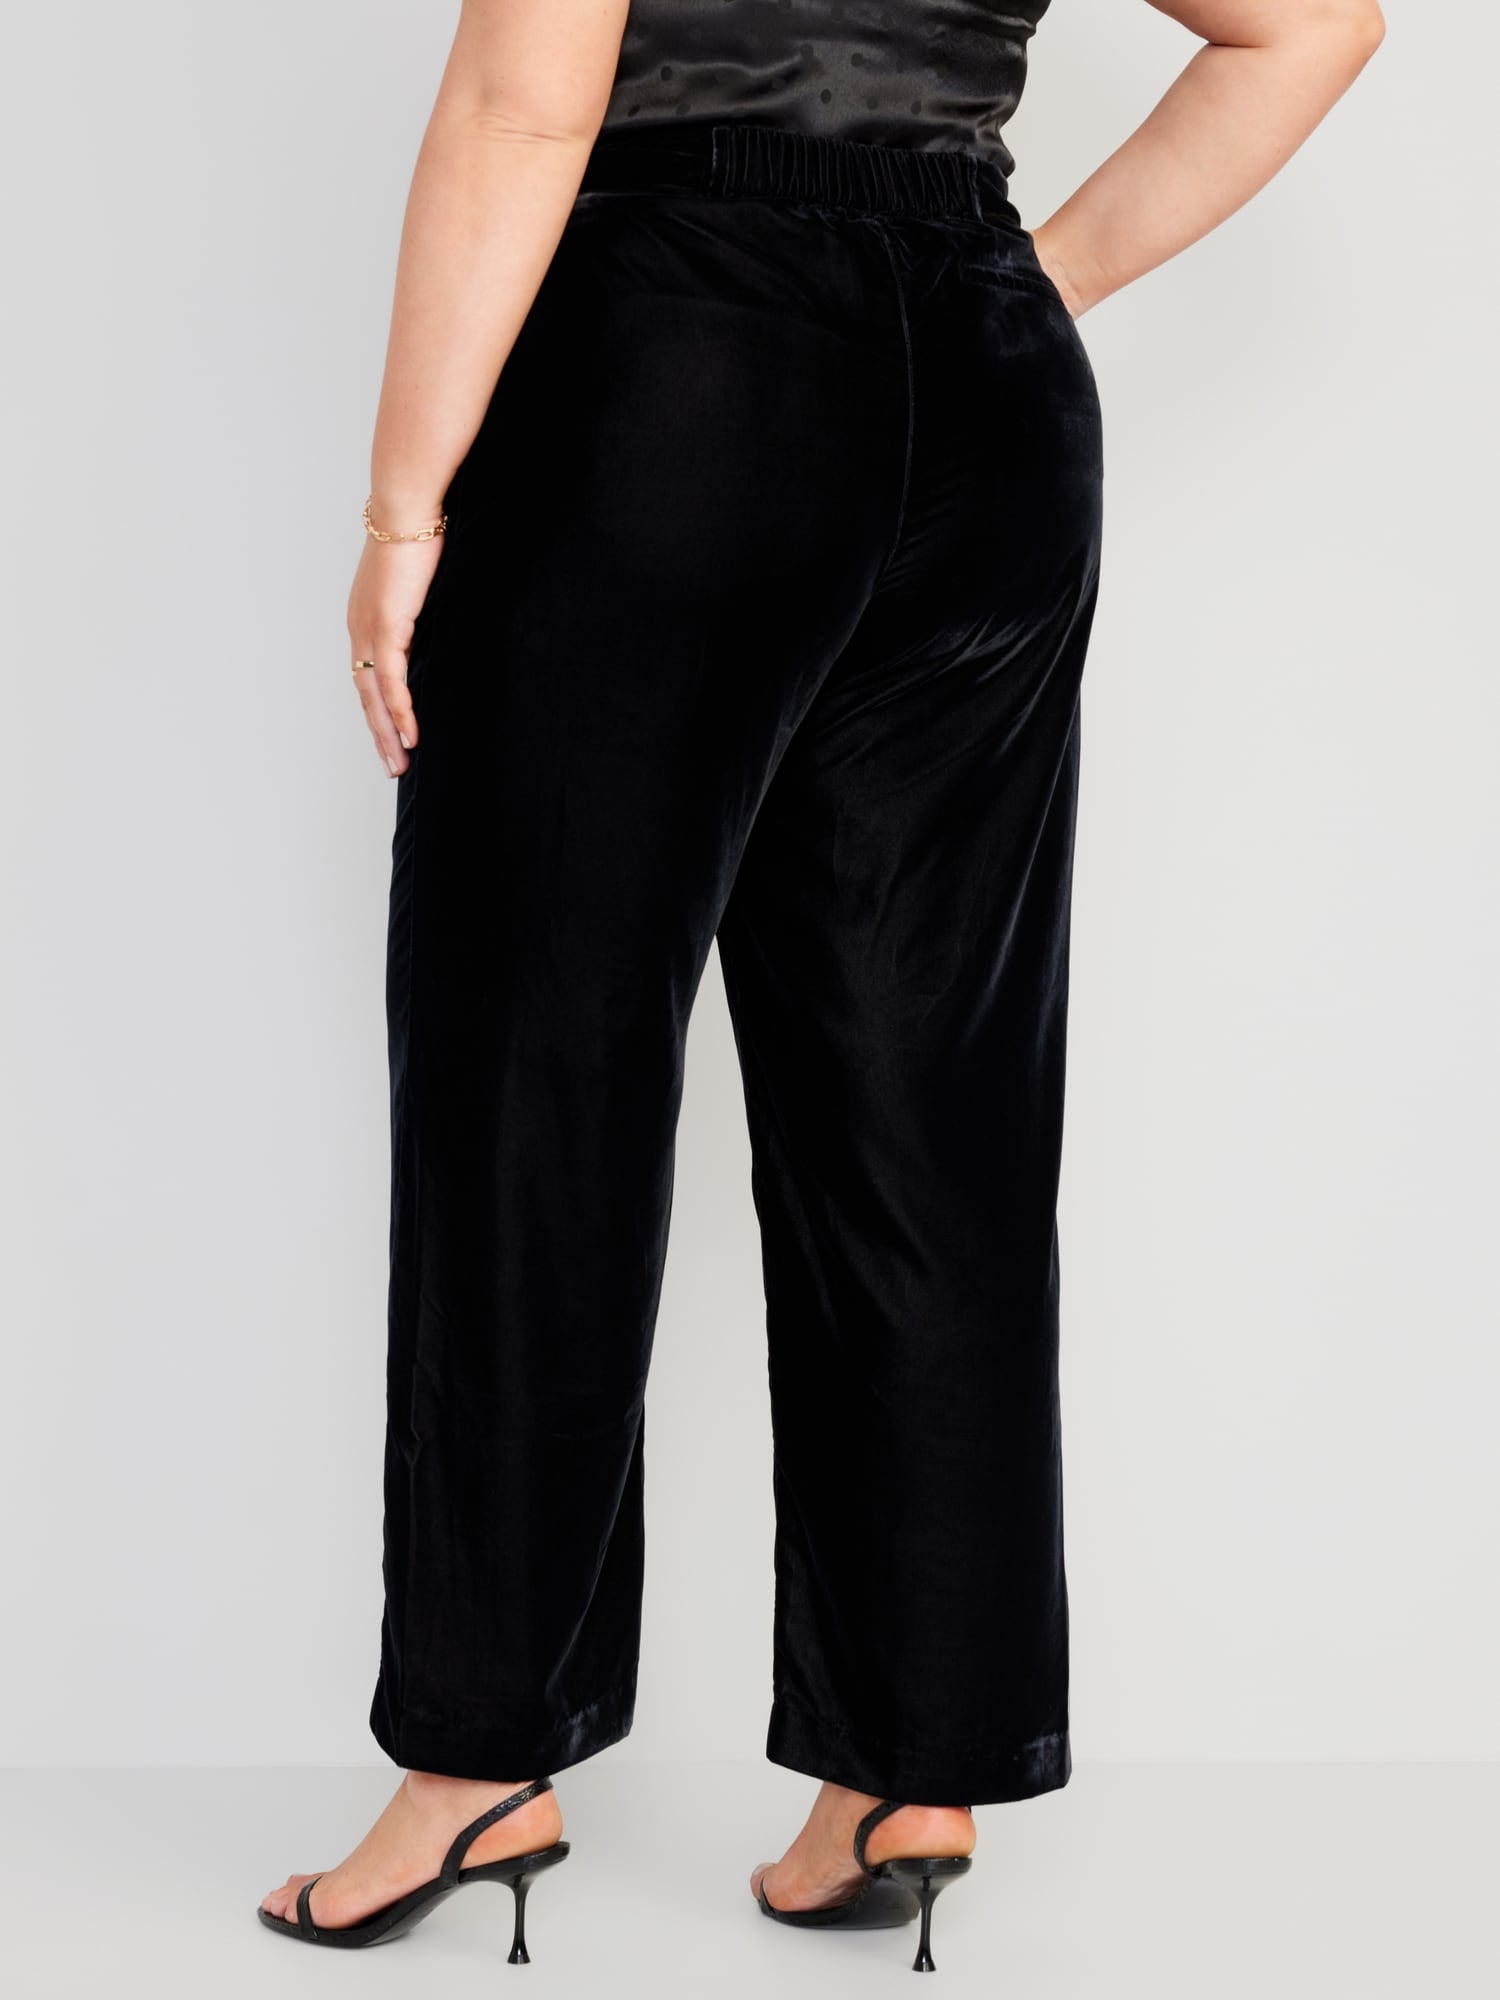 Sexy In Suede Black Velvet Pants - TIA Trends - Shop Today